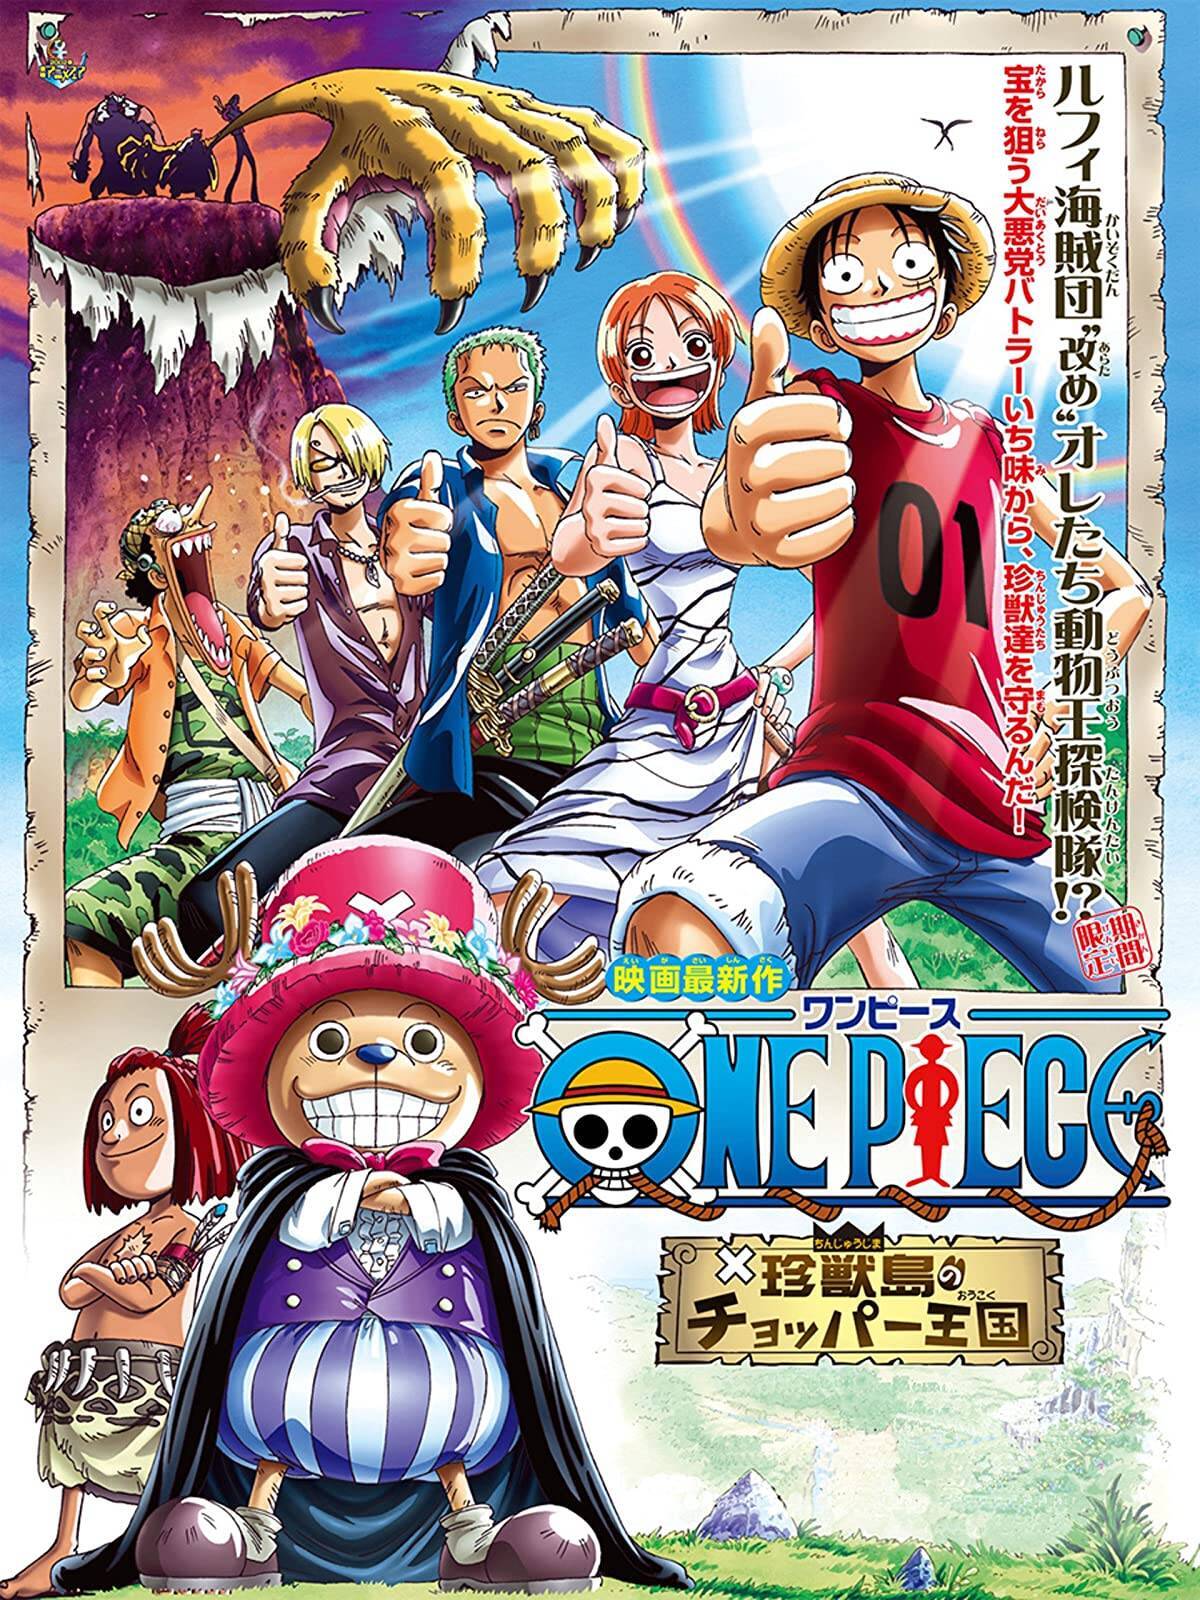 劇場版 One Piece Stampede Wowow独占初放送決定 劇場版 One Piece 全14作も一挙放送 年6月2日 エキサイトニュース